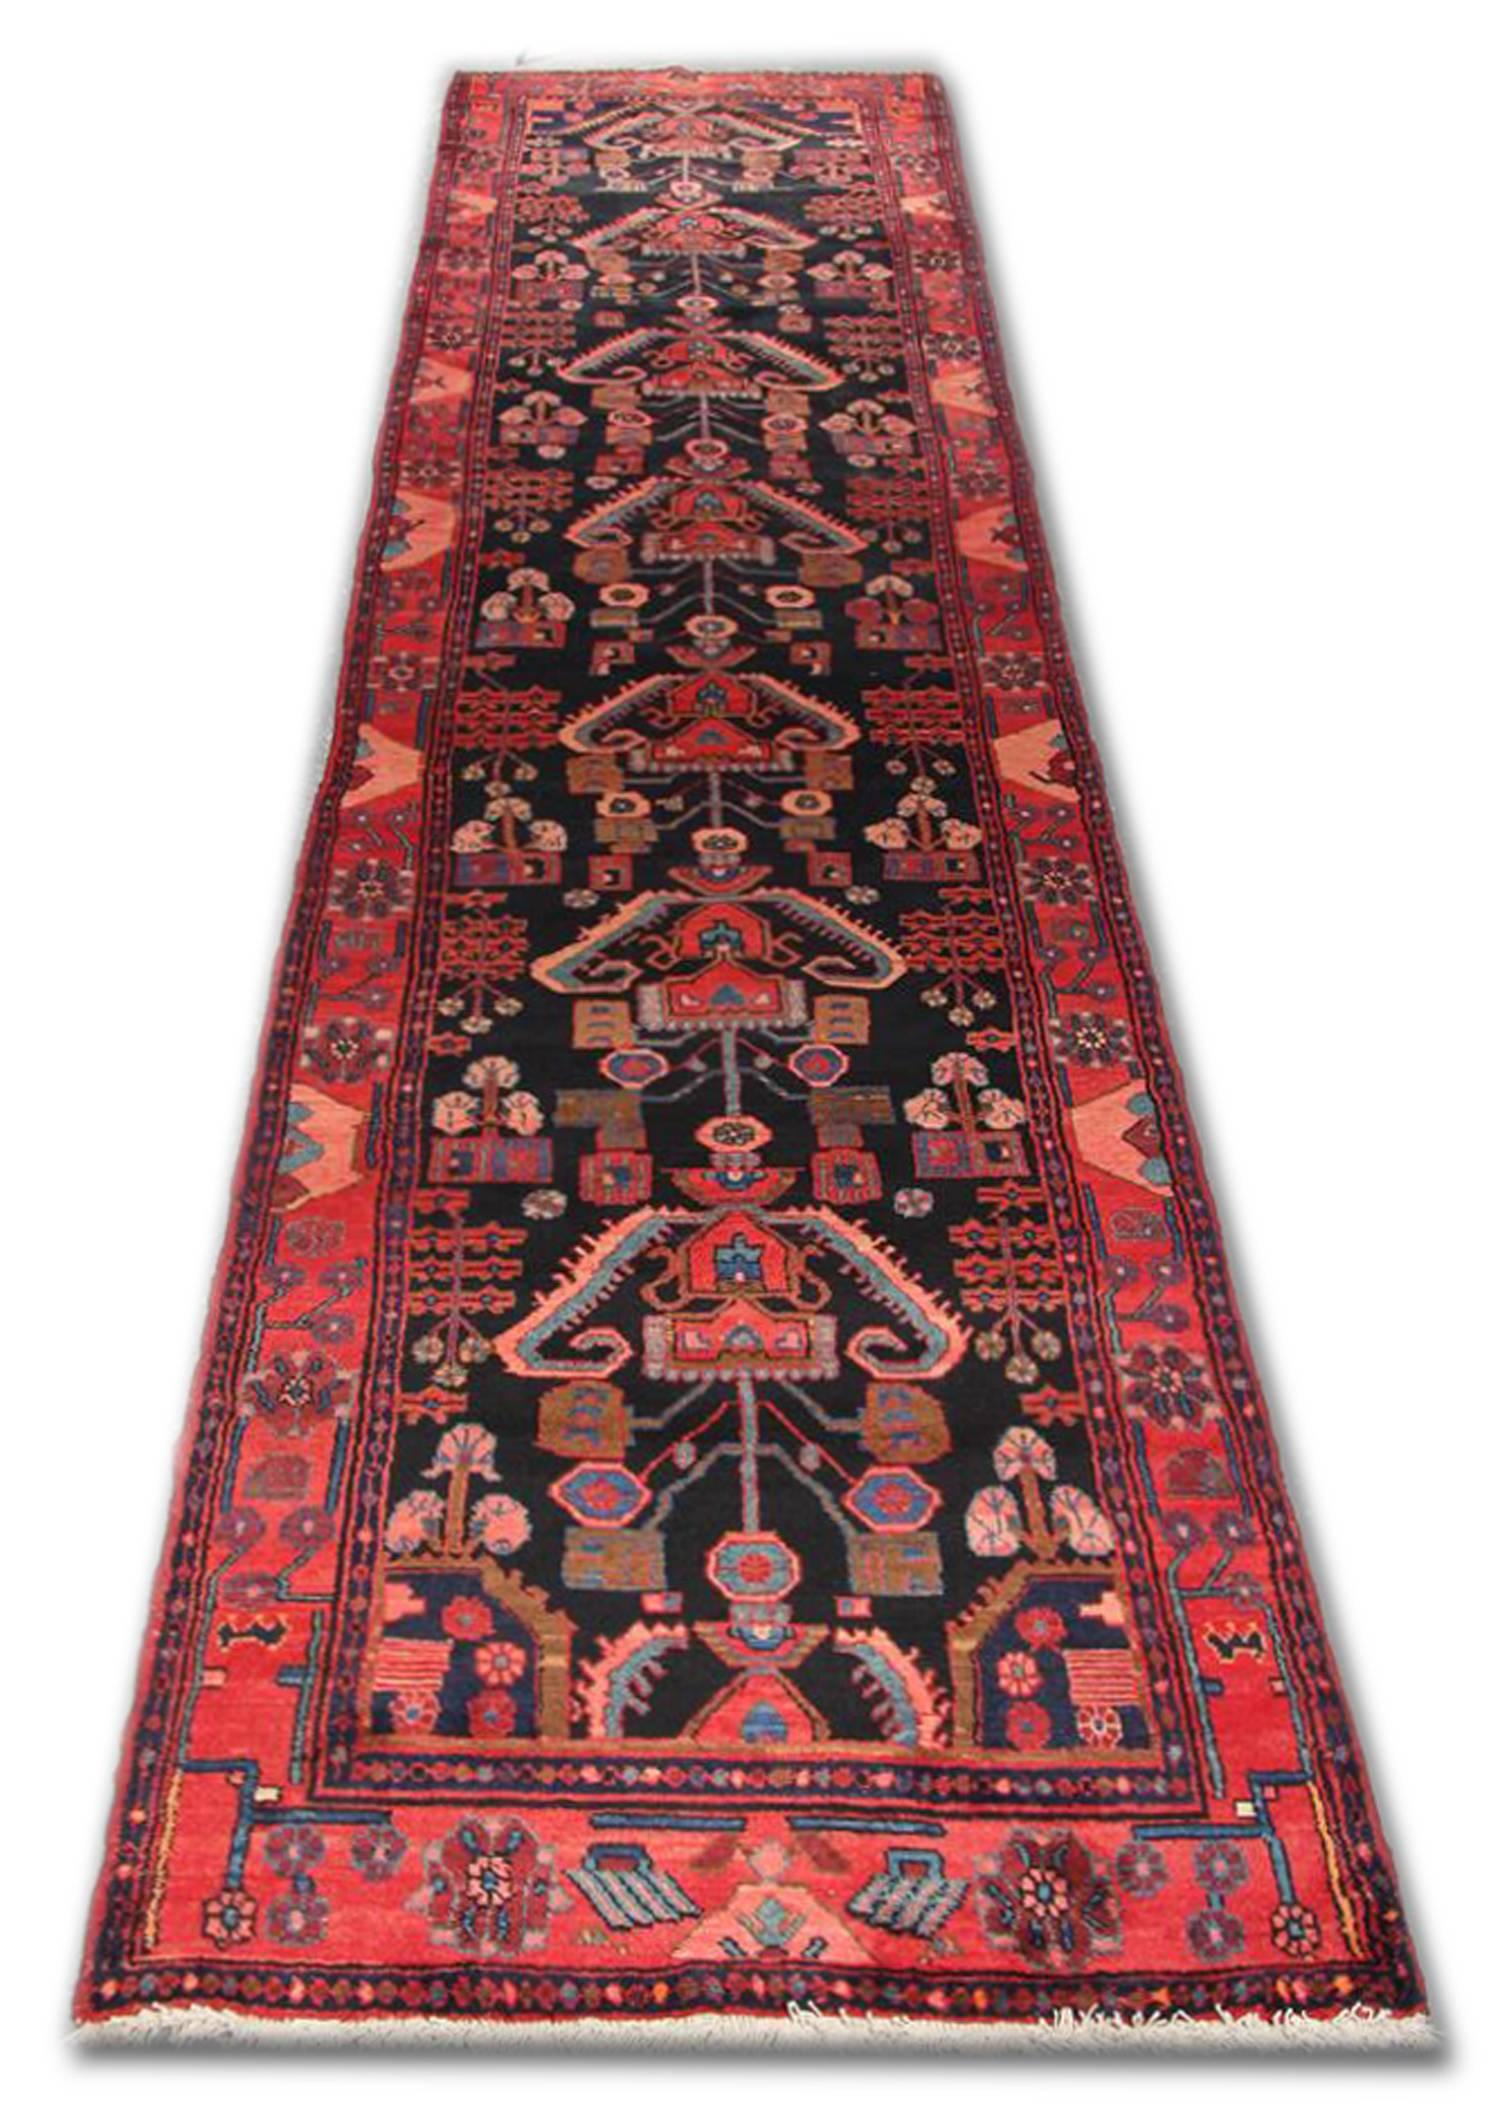 Rustic Oriental Runner Rug Handmade Tribal Geometric Wool Area Rug For Sale